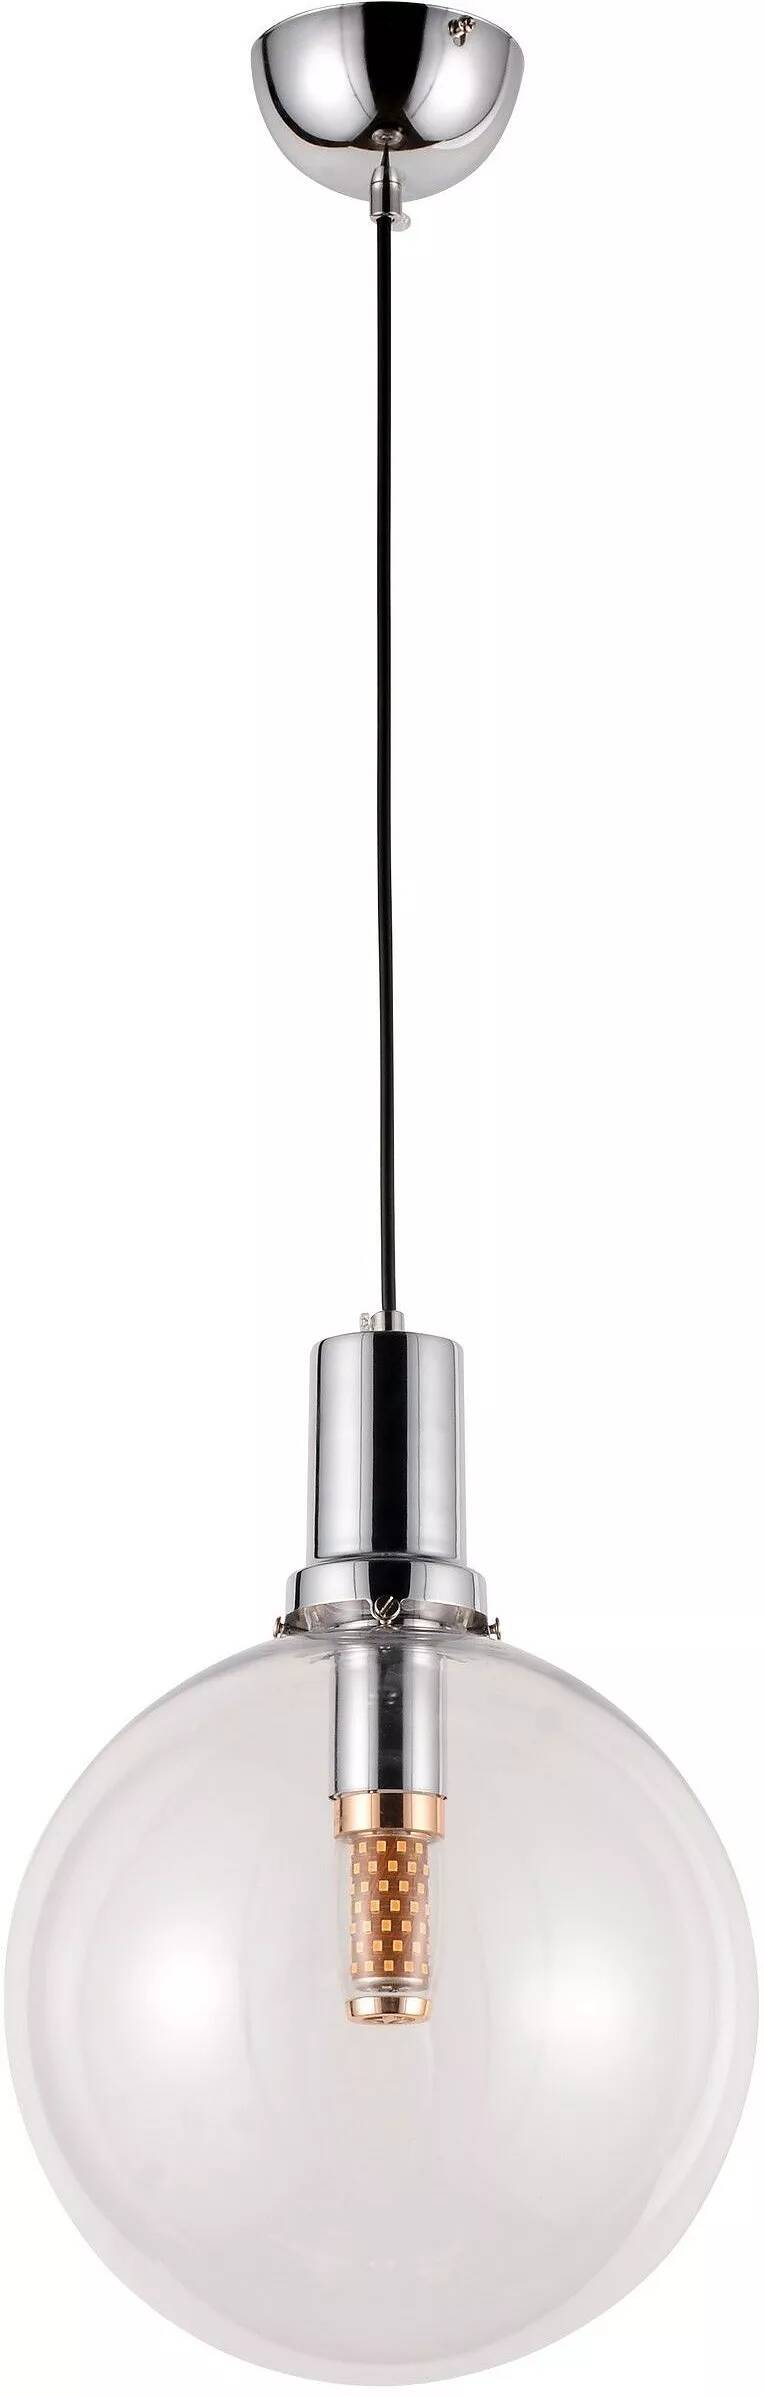 Lampe suspension en verre et métal chromé Ø25